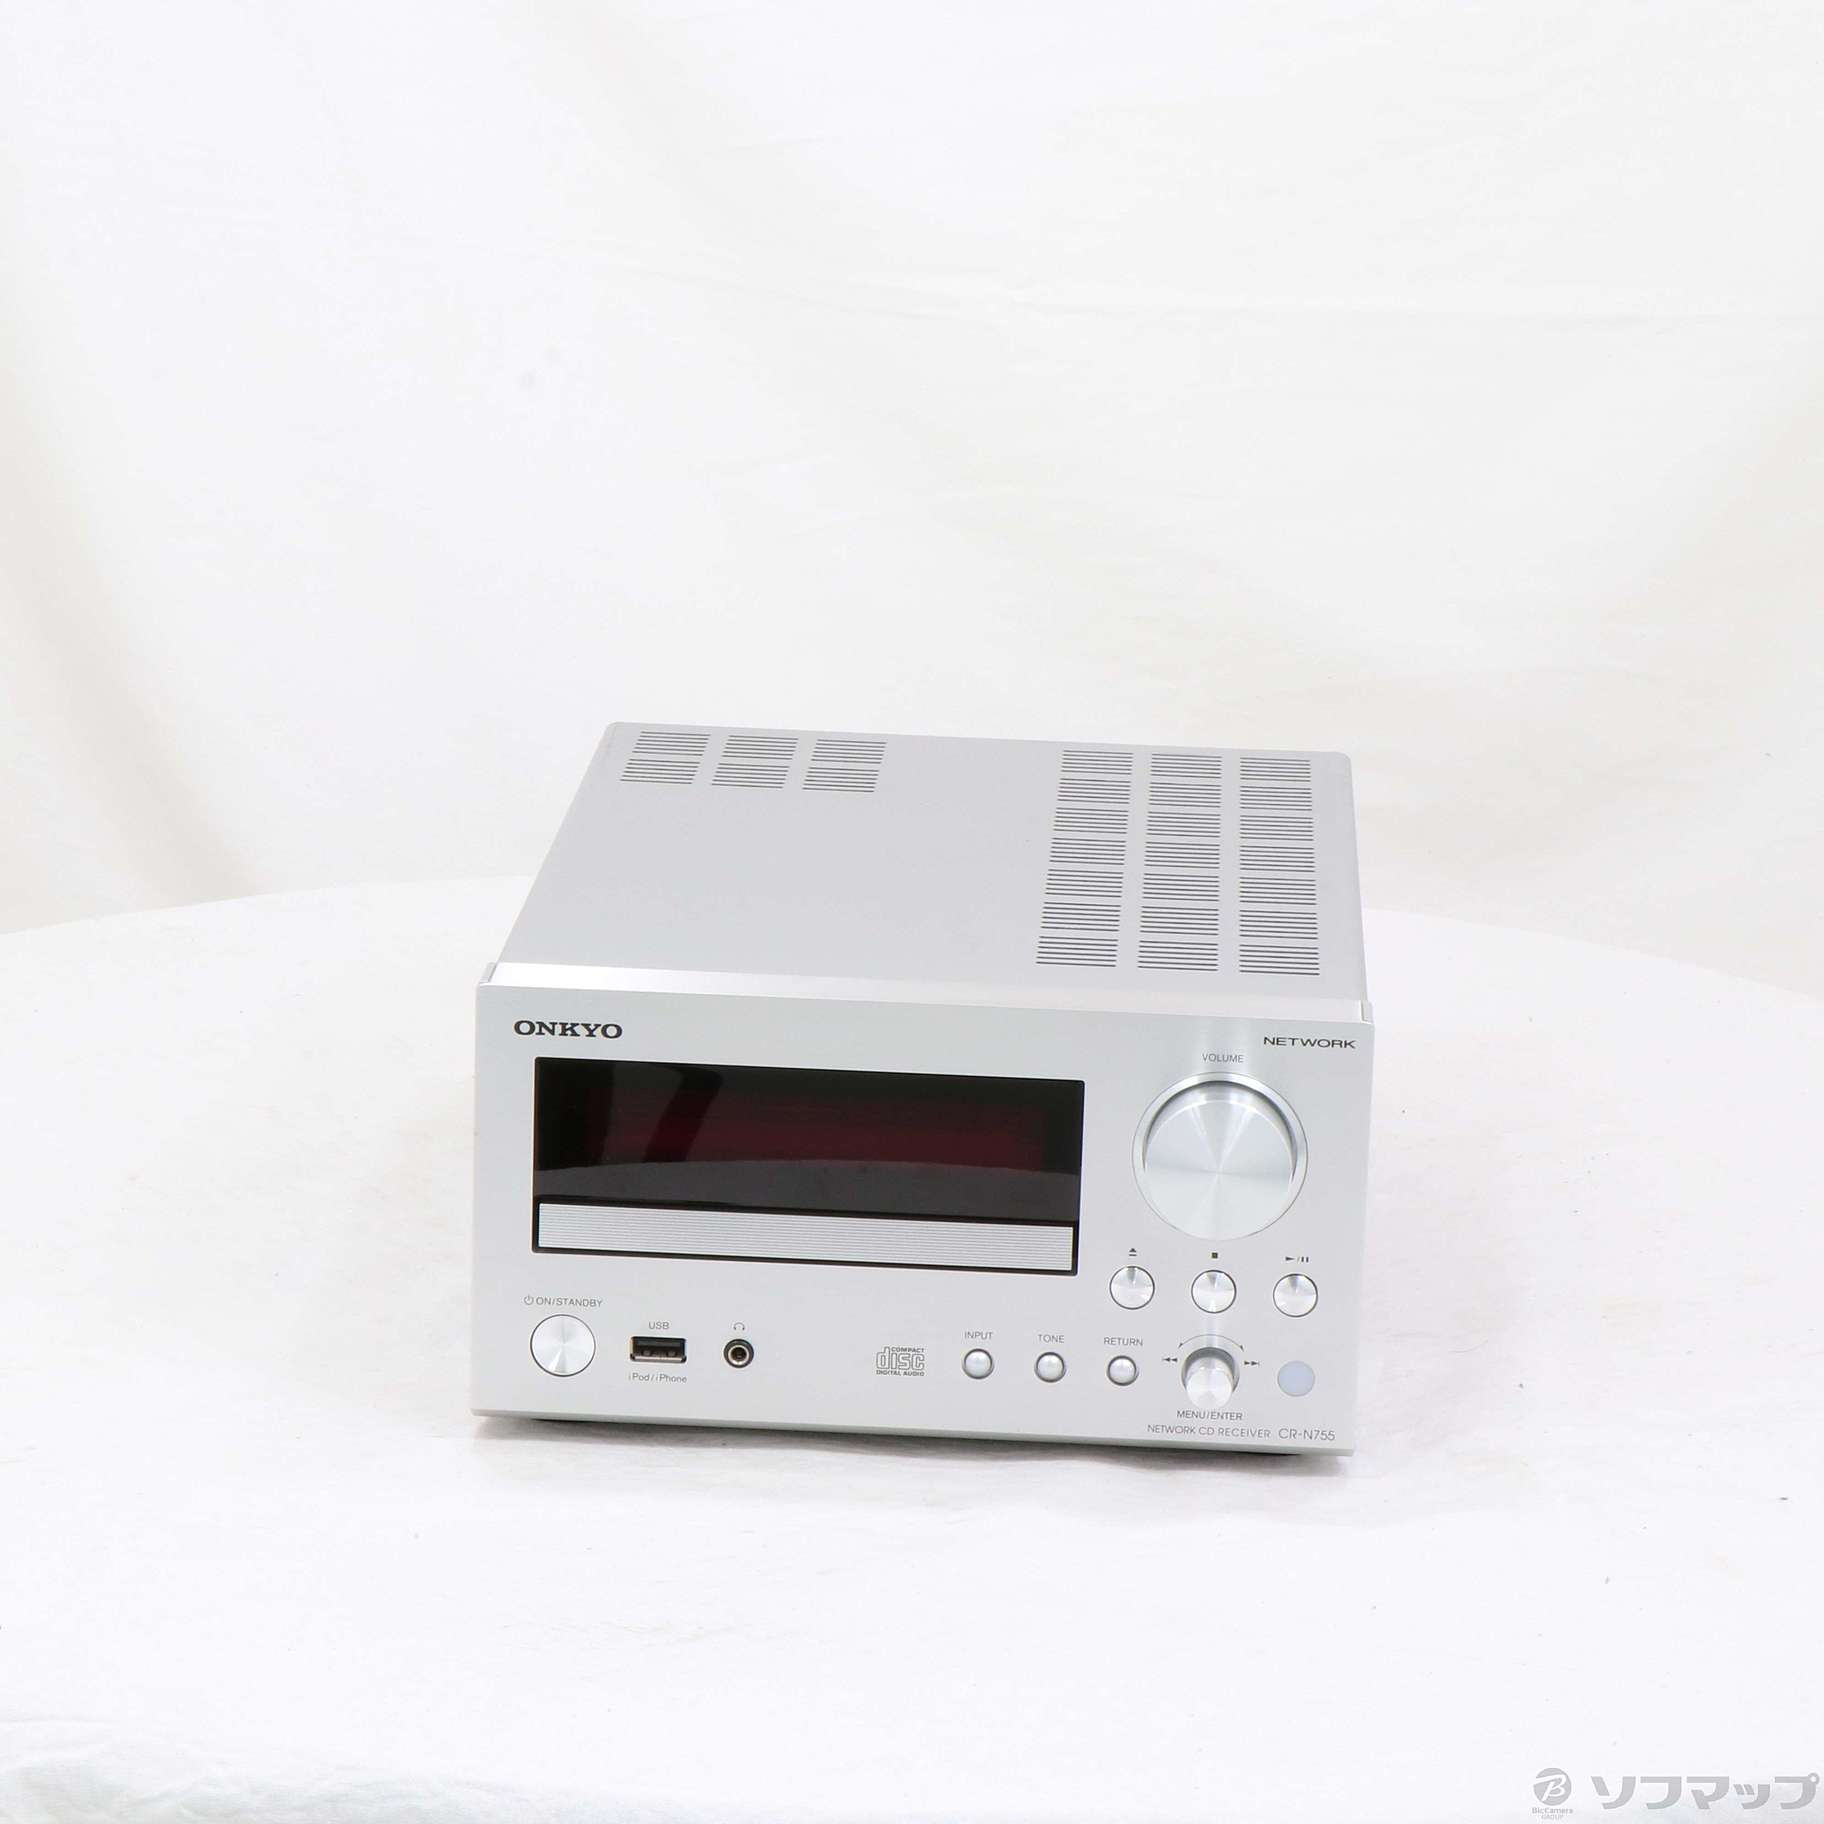 オーディオ機器 アンプ ONKYO ネットワークCDレシーバー CR-N755(S) 純正お買い得 www 